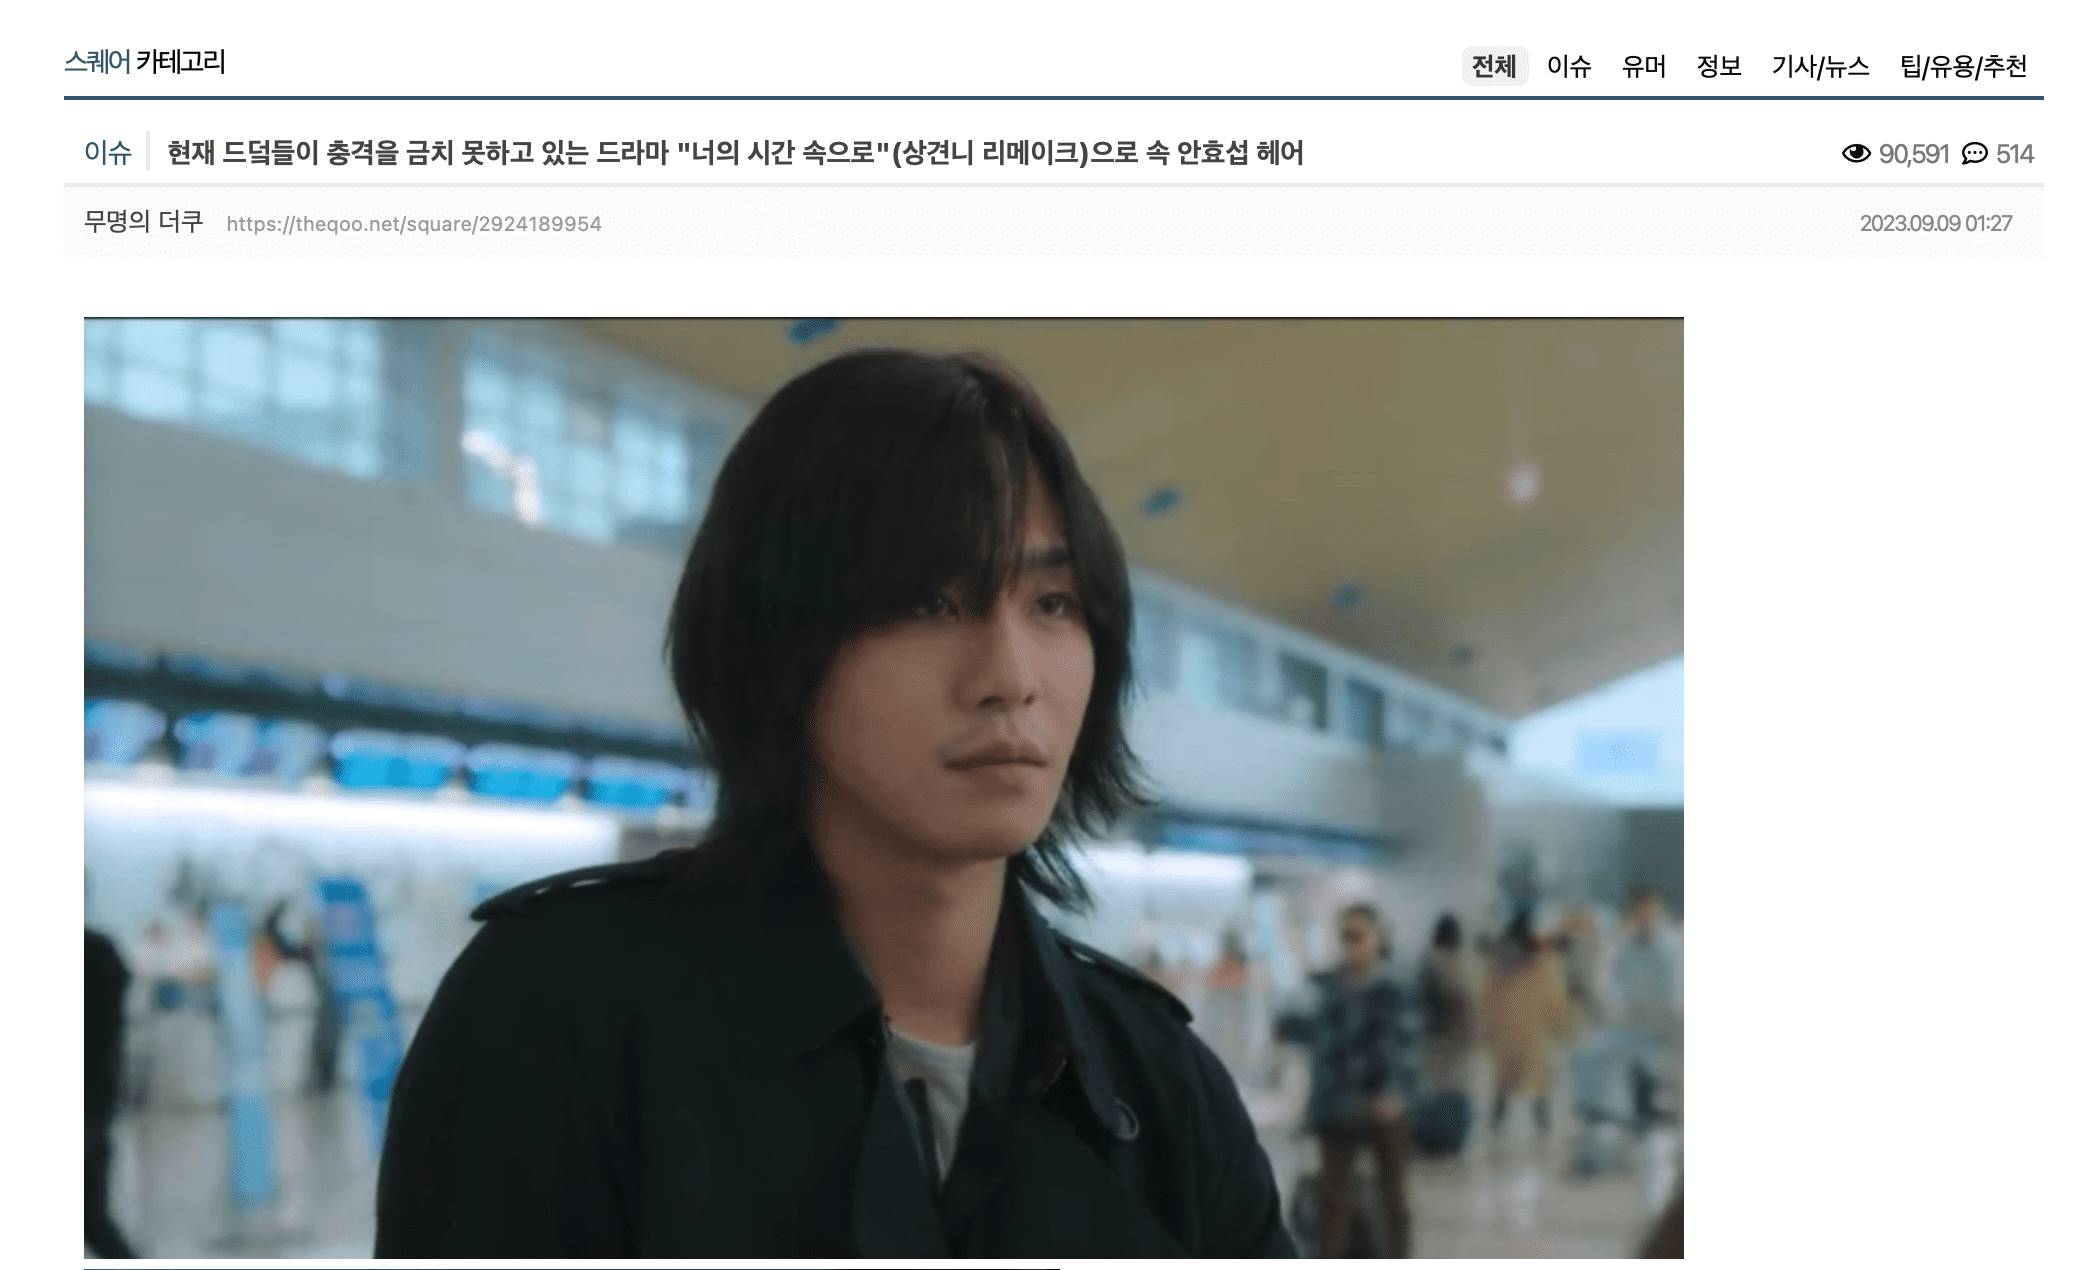 安孝燮在《走進你的時間》造型和《想見你》許光漢造型被韓國網友拿來做對比。